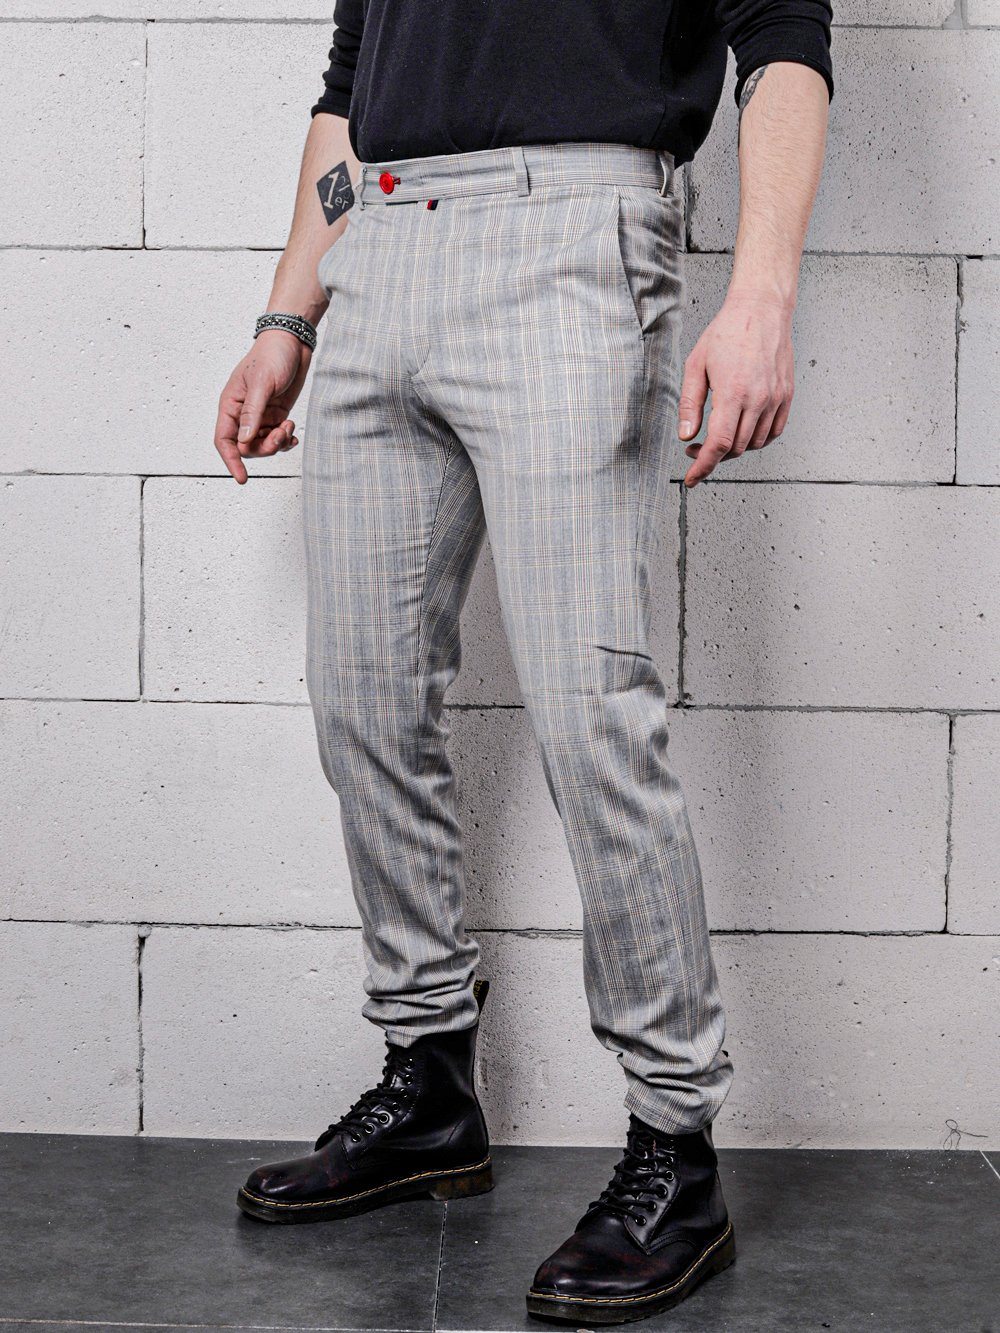 Lower body side shot of a man wearing VANILLA LATTE Striped Pants by SERNES